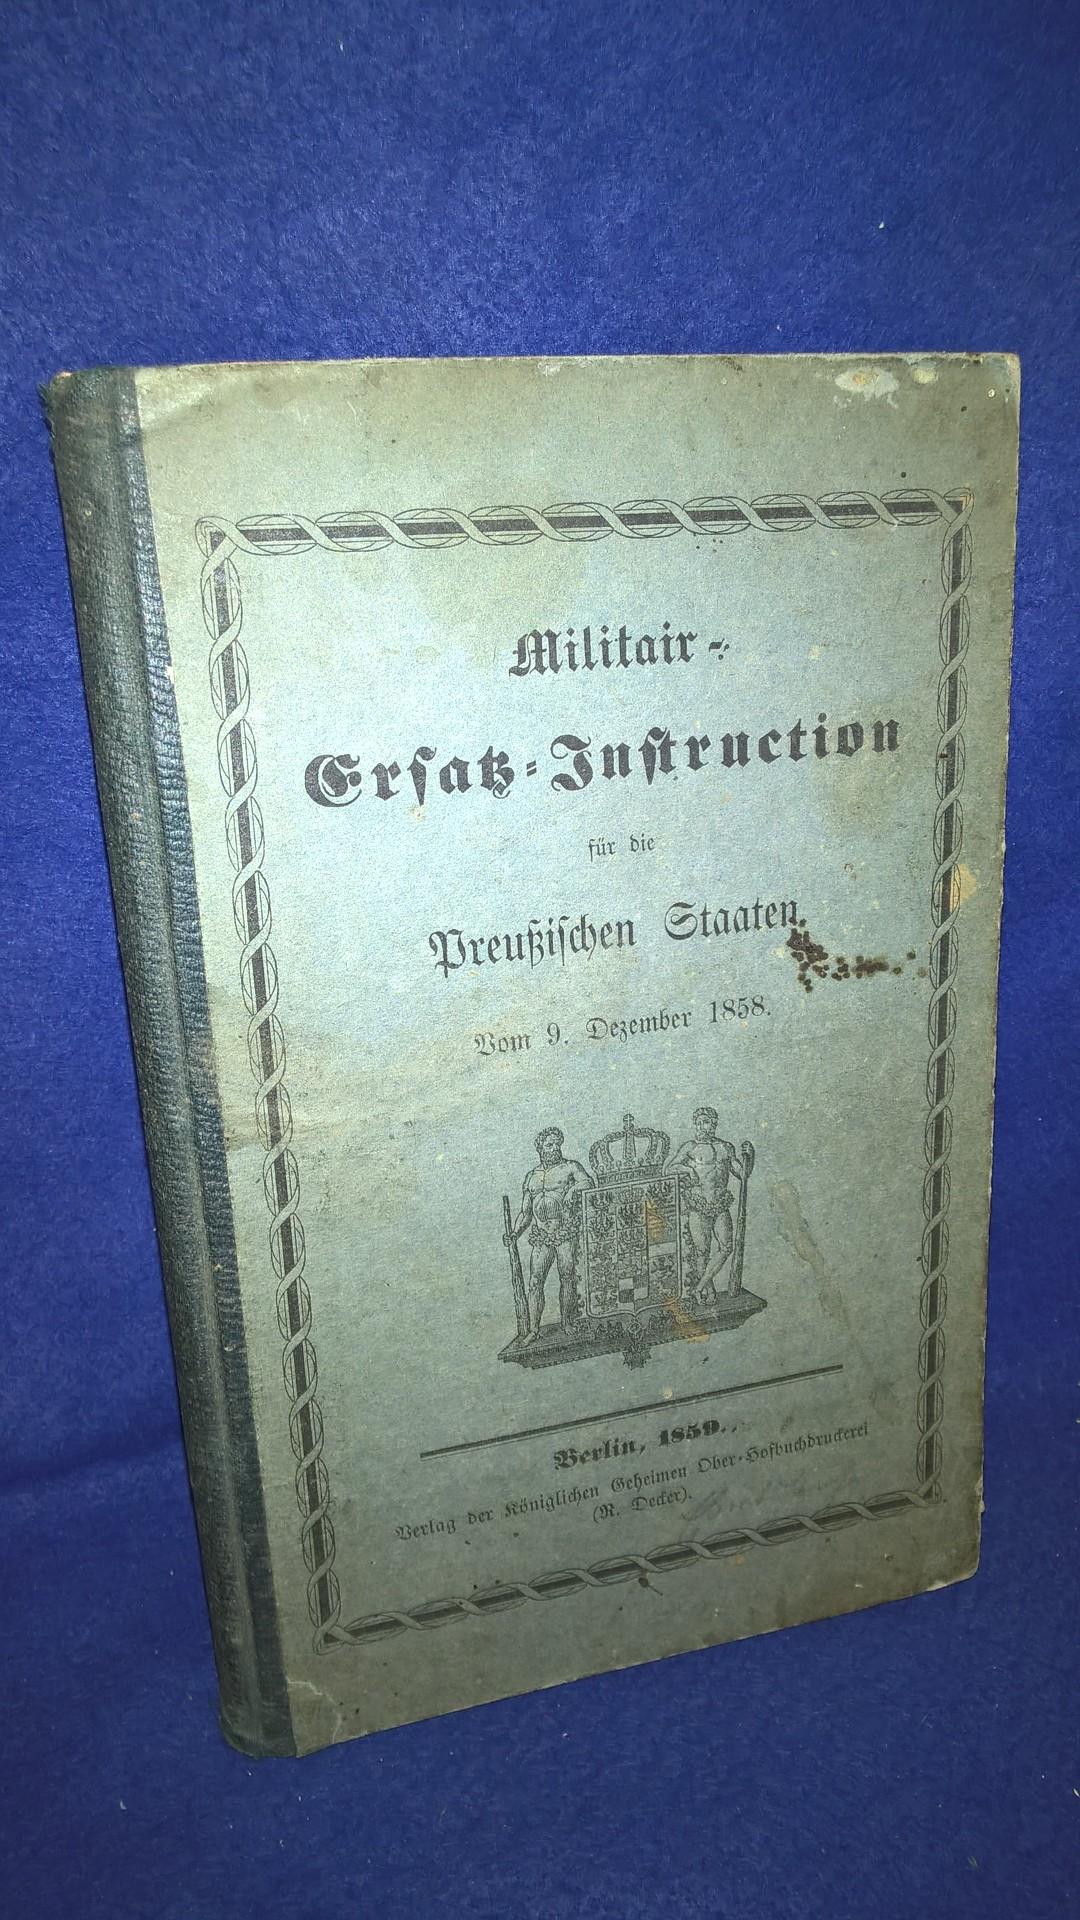 Militair-Ersatz-Instruction für die Preußischen Staaten. Vom 9. Dezember 1858.